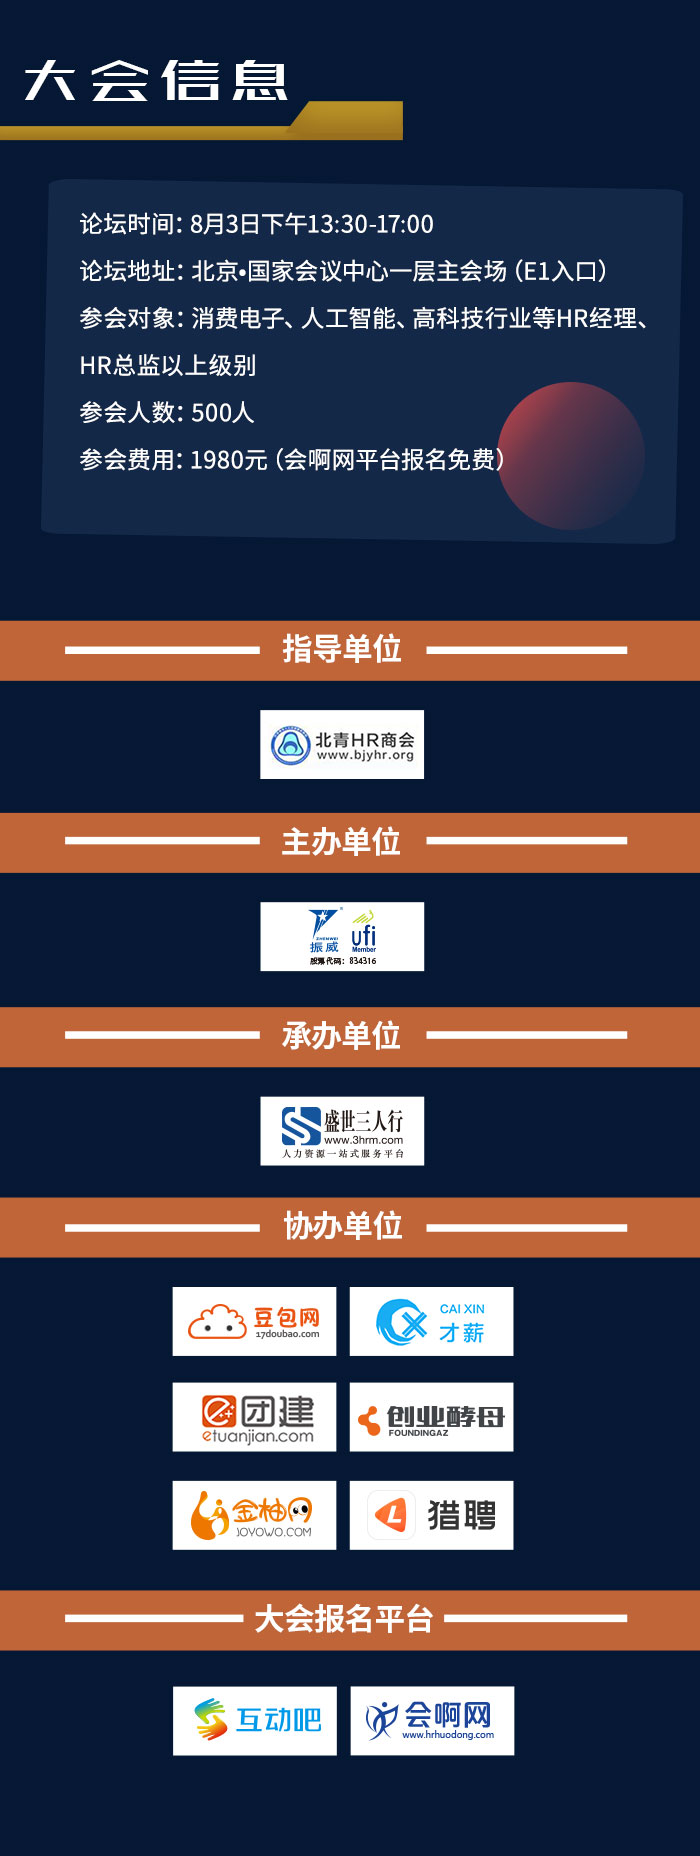 2019北京国际消费电子博览会内容fdsfdfsd_04.jpg